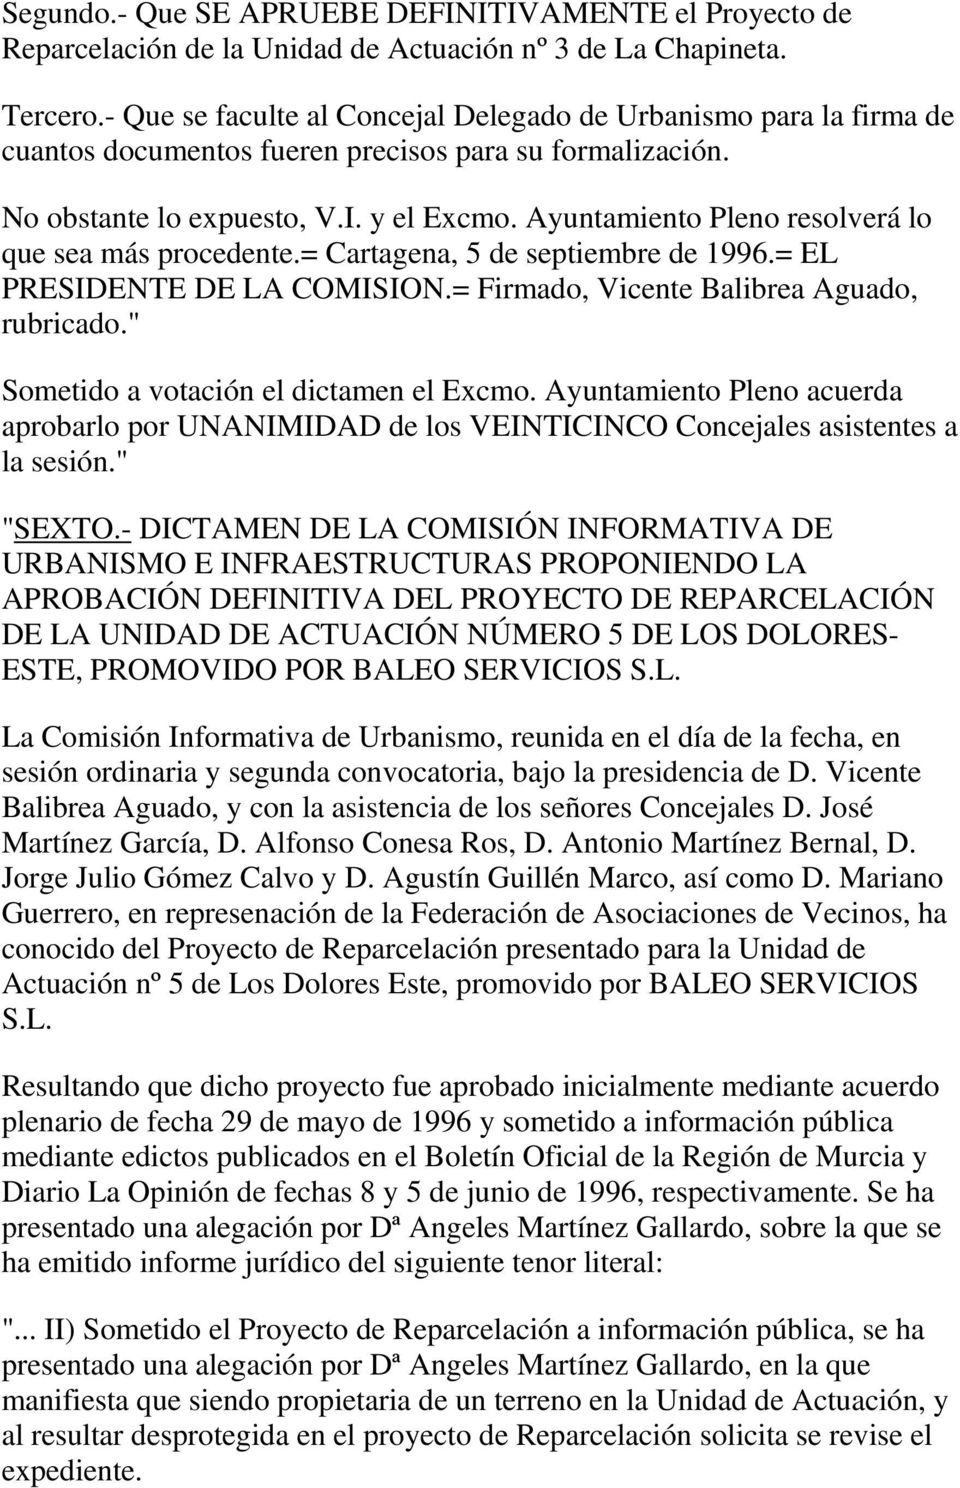 Ayuntamiento Pleno resolverá lo que sea más procedente.= Cartagena, 5 de septiembre de 1996.= EL PRESIDENTE DE LA COMISION.= Firmado, Vicente Balibrea Aguado, rubricado.